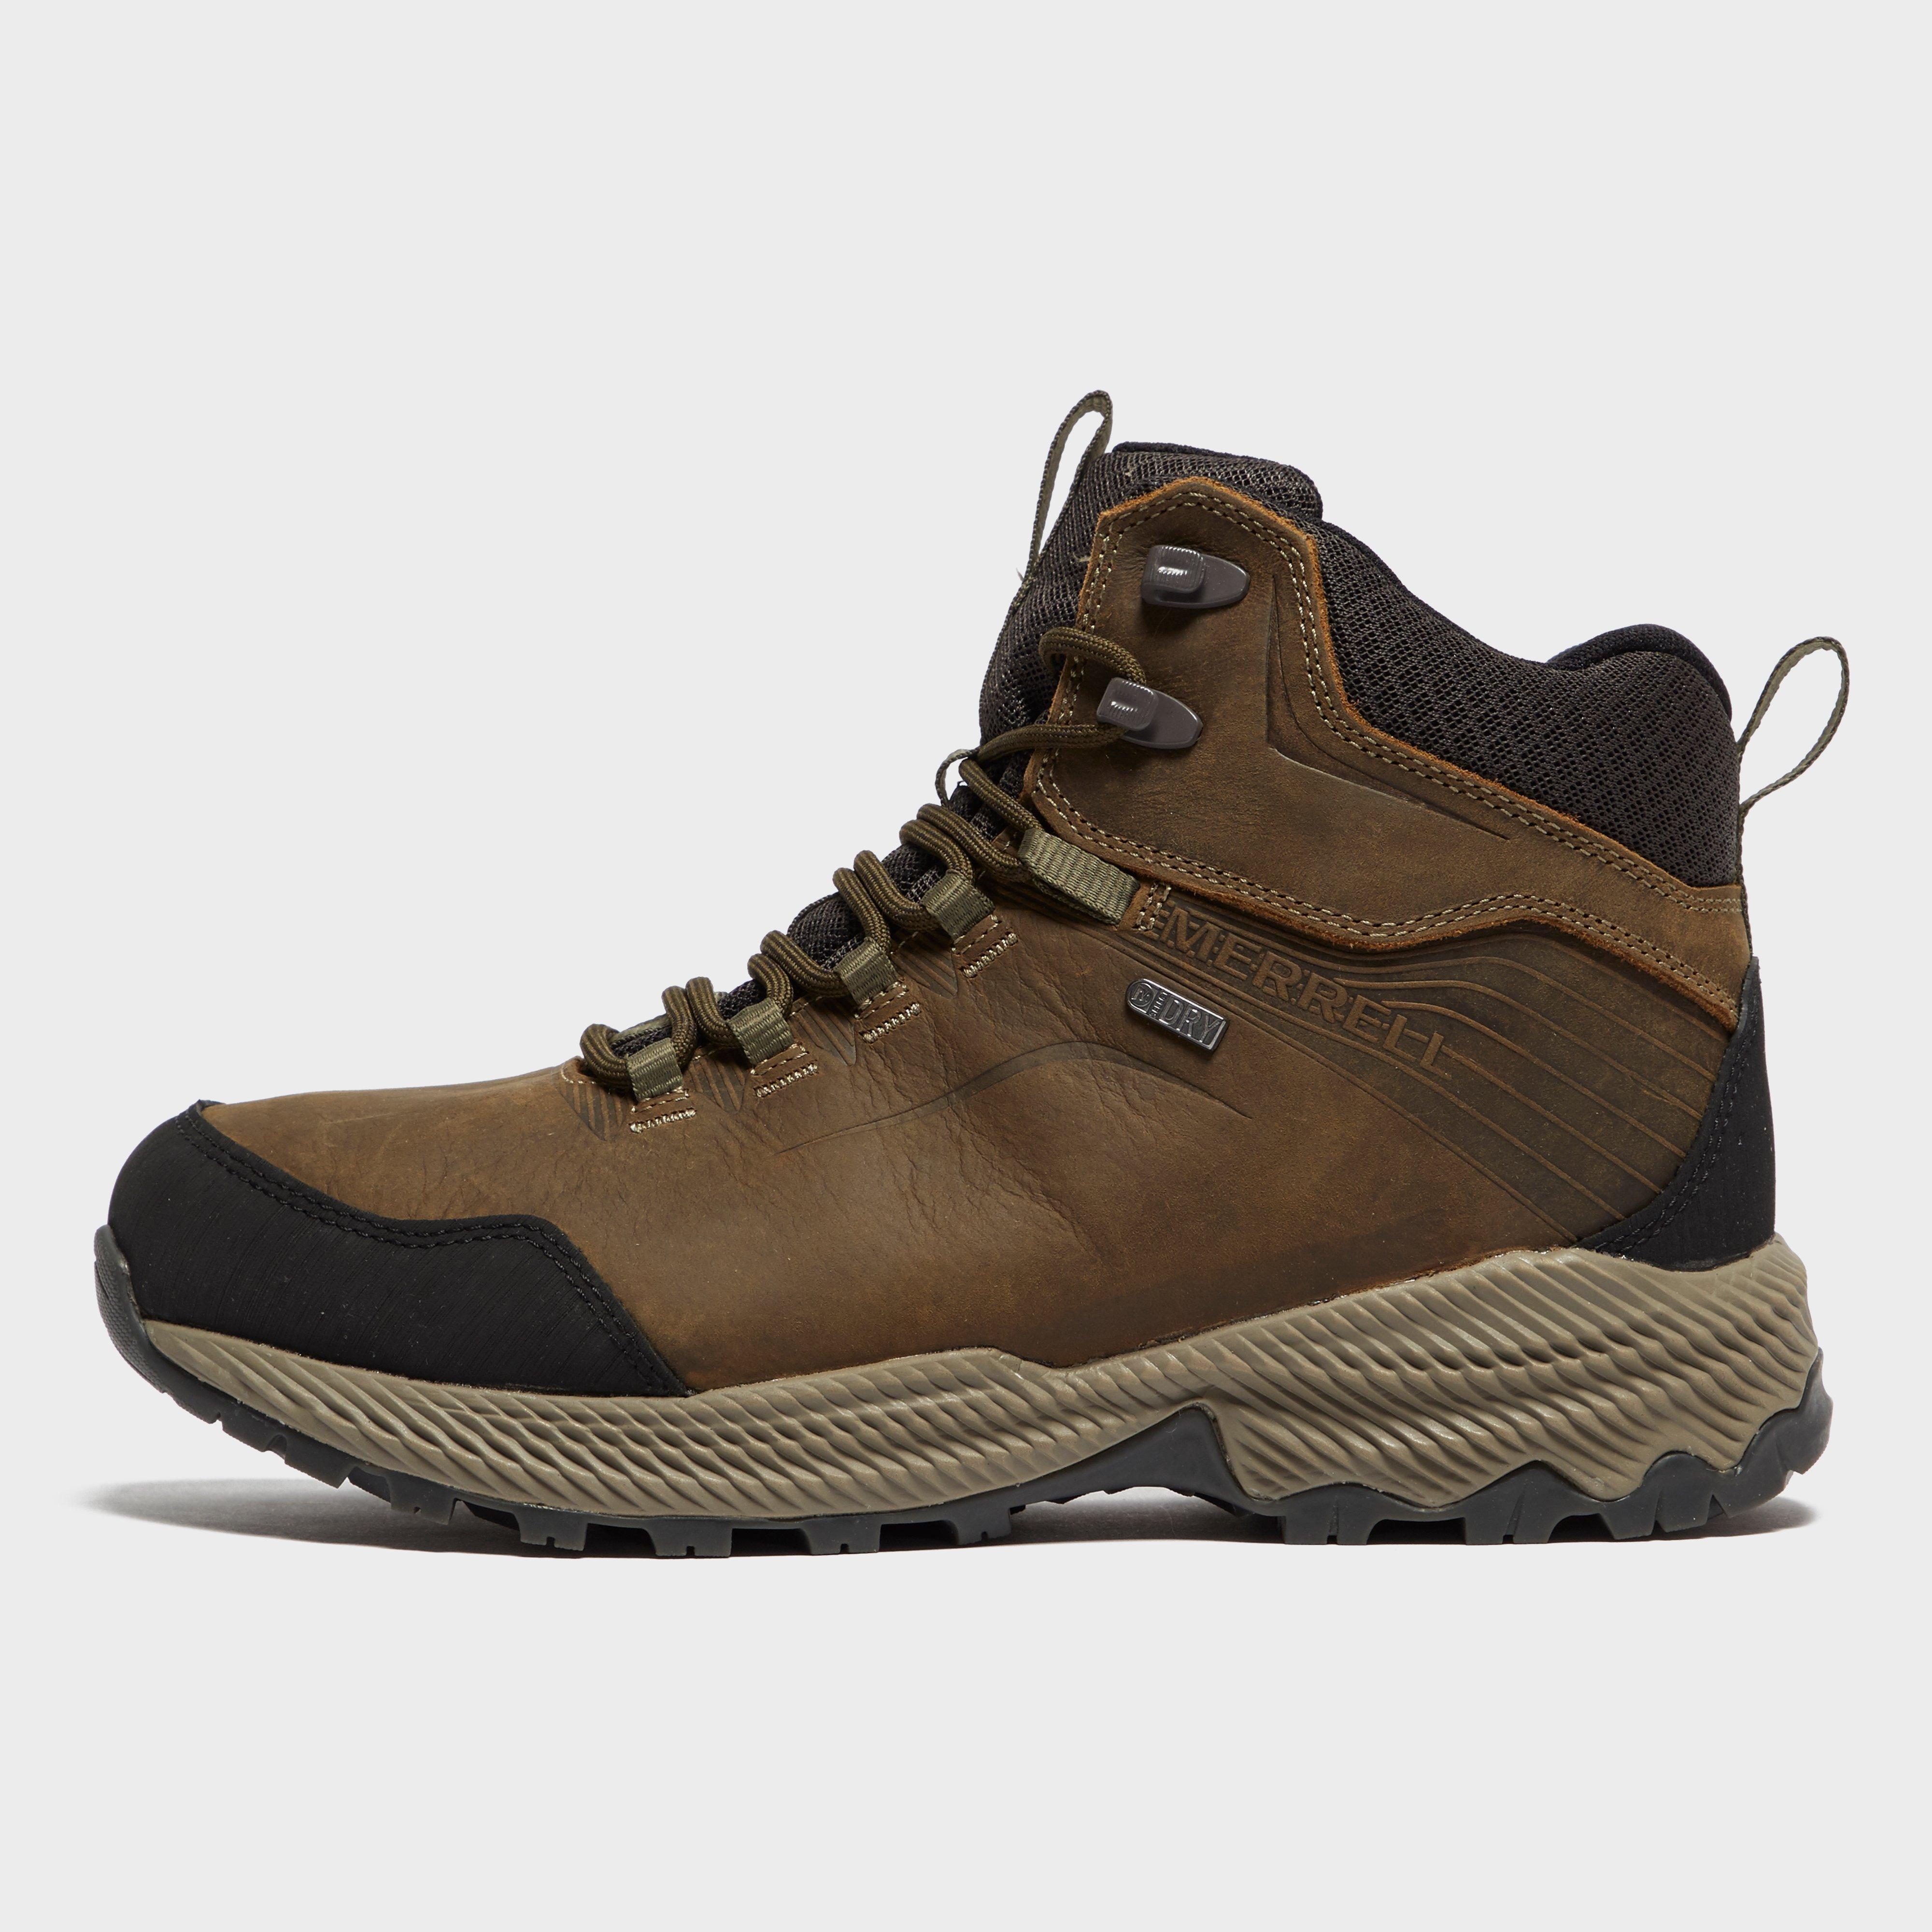 Mens Merrell Waterproof Boots 'Telluride Mid J23513'